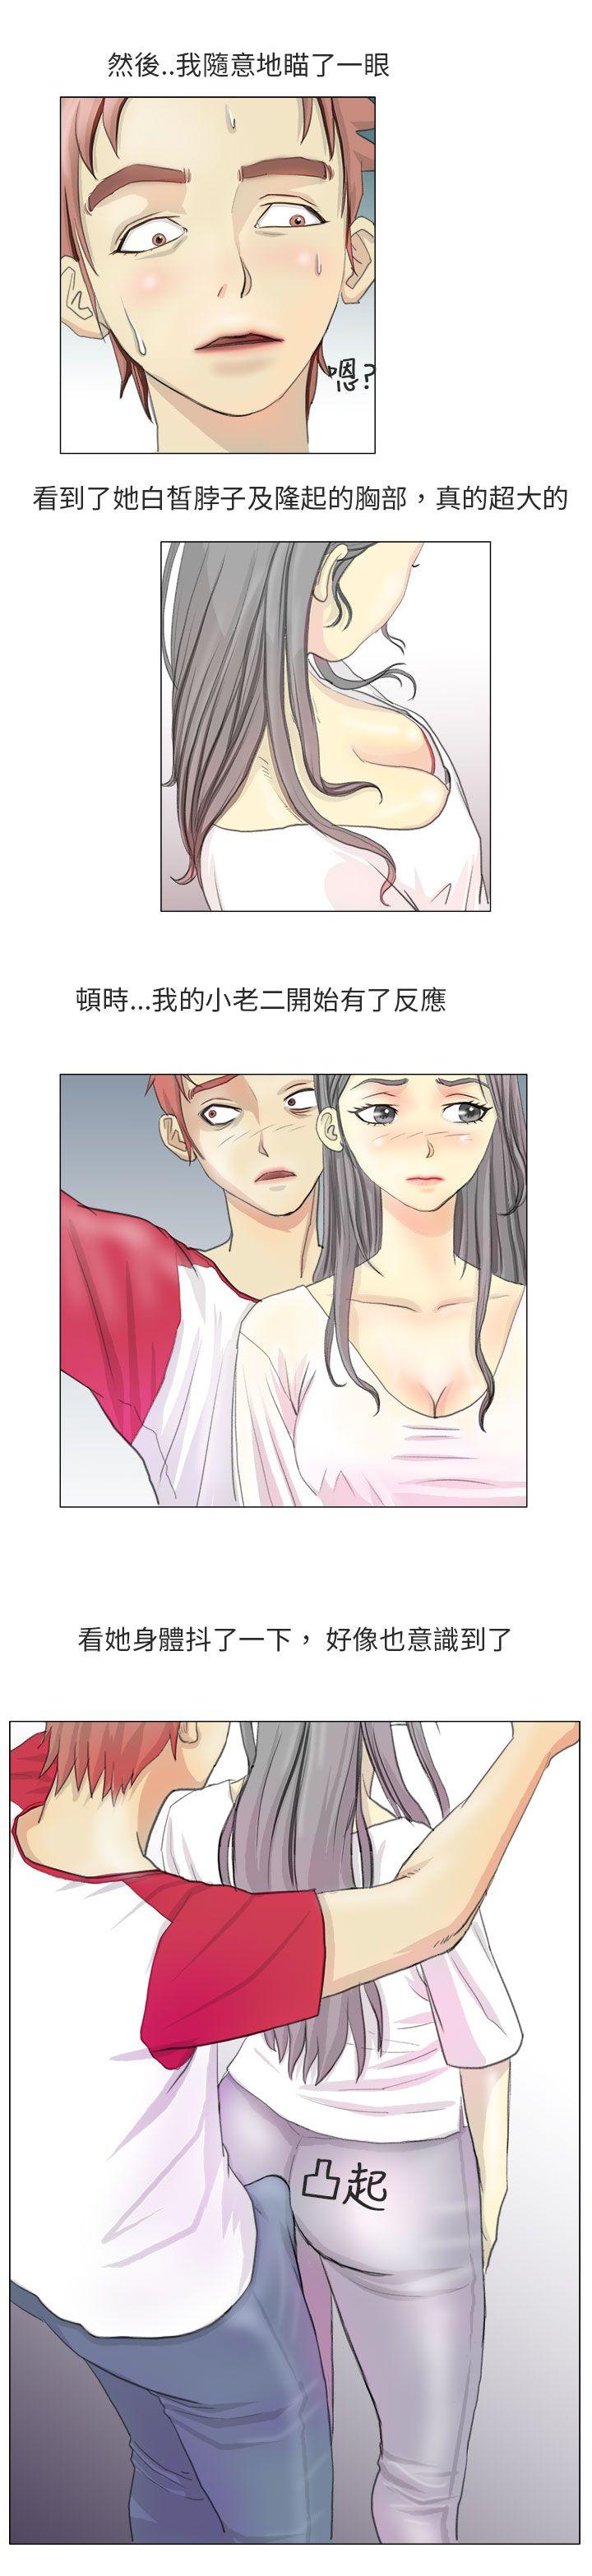 韩国污漫画 秘密Story第二季 电车痴汉?(上) 4